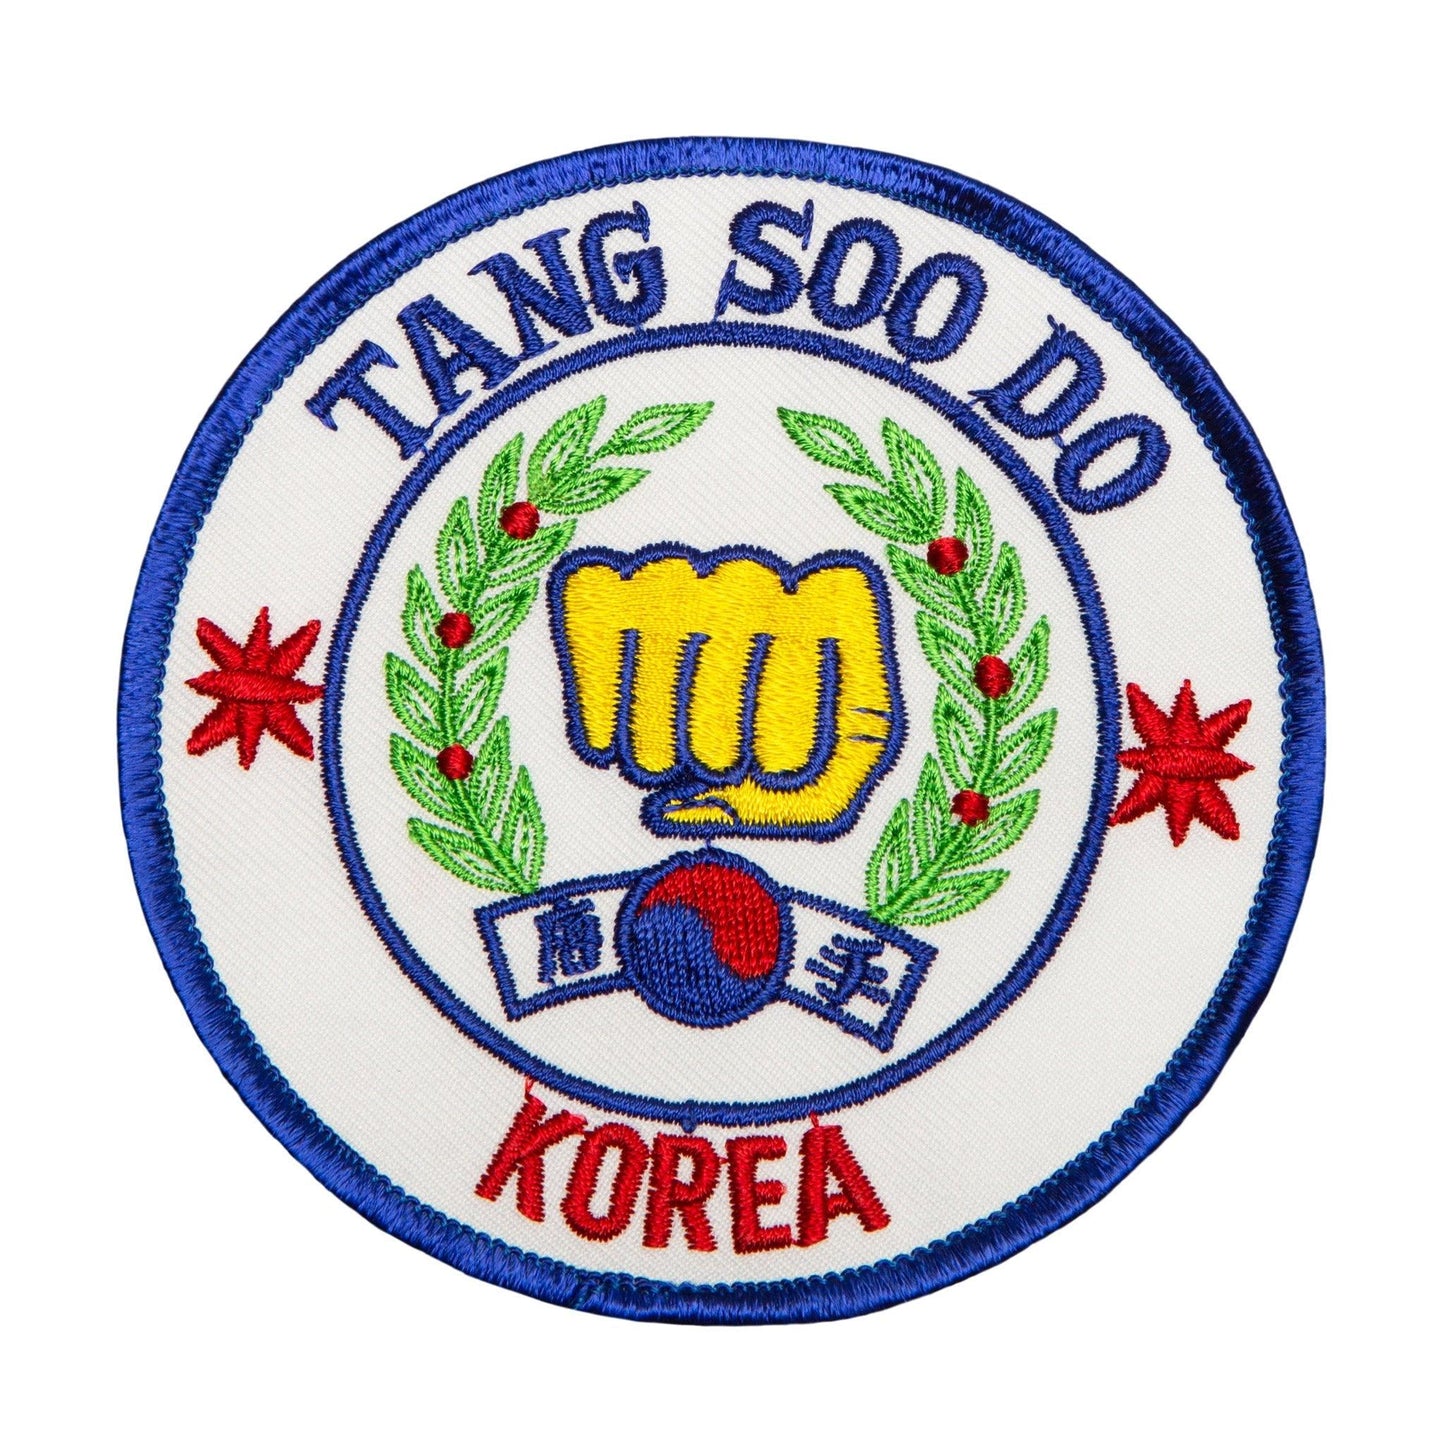 Tang Soo Do/Korea Patch - Violent Art Shop